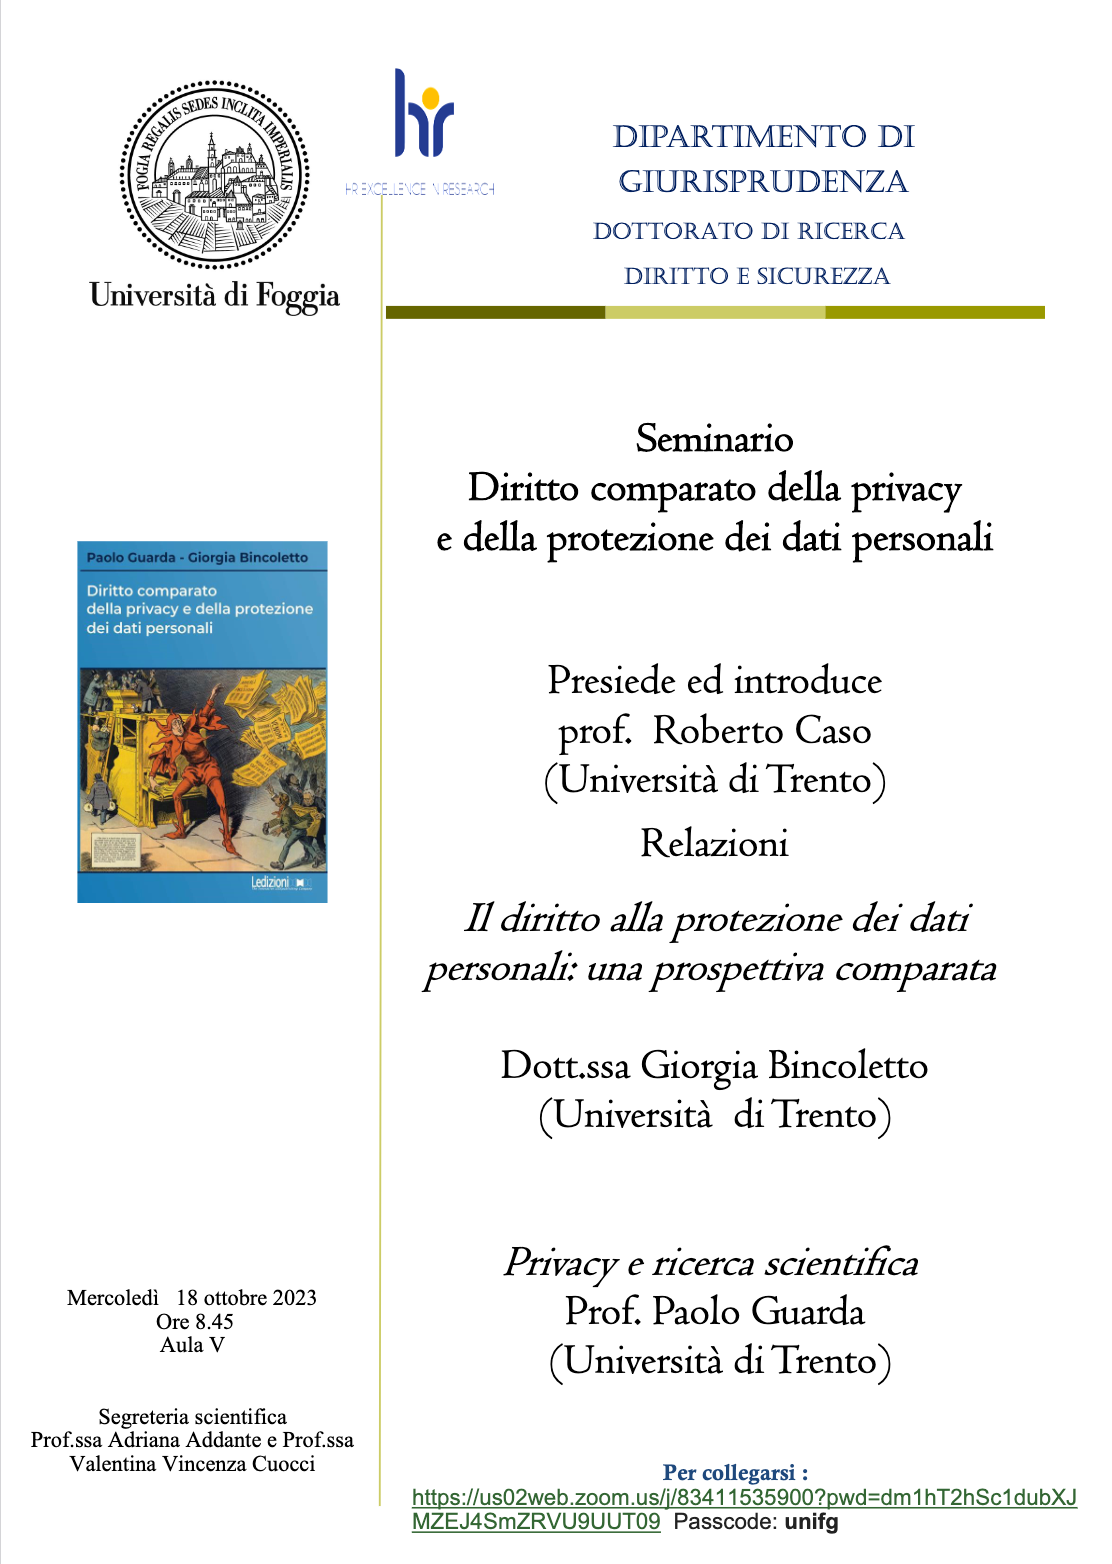 PDF) Il catalano, lingua e identità l Il contributo della lingua nel fare  una nazione